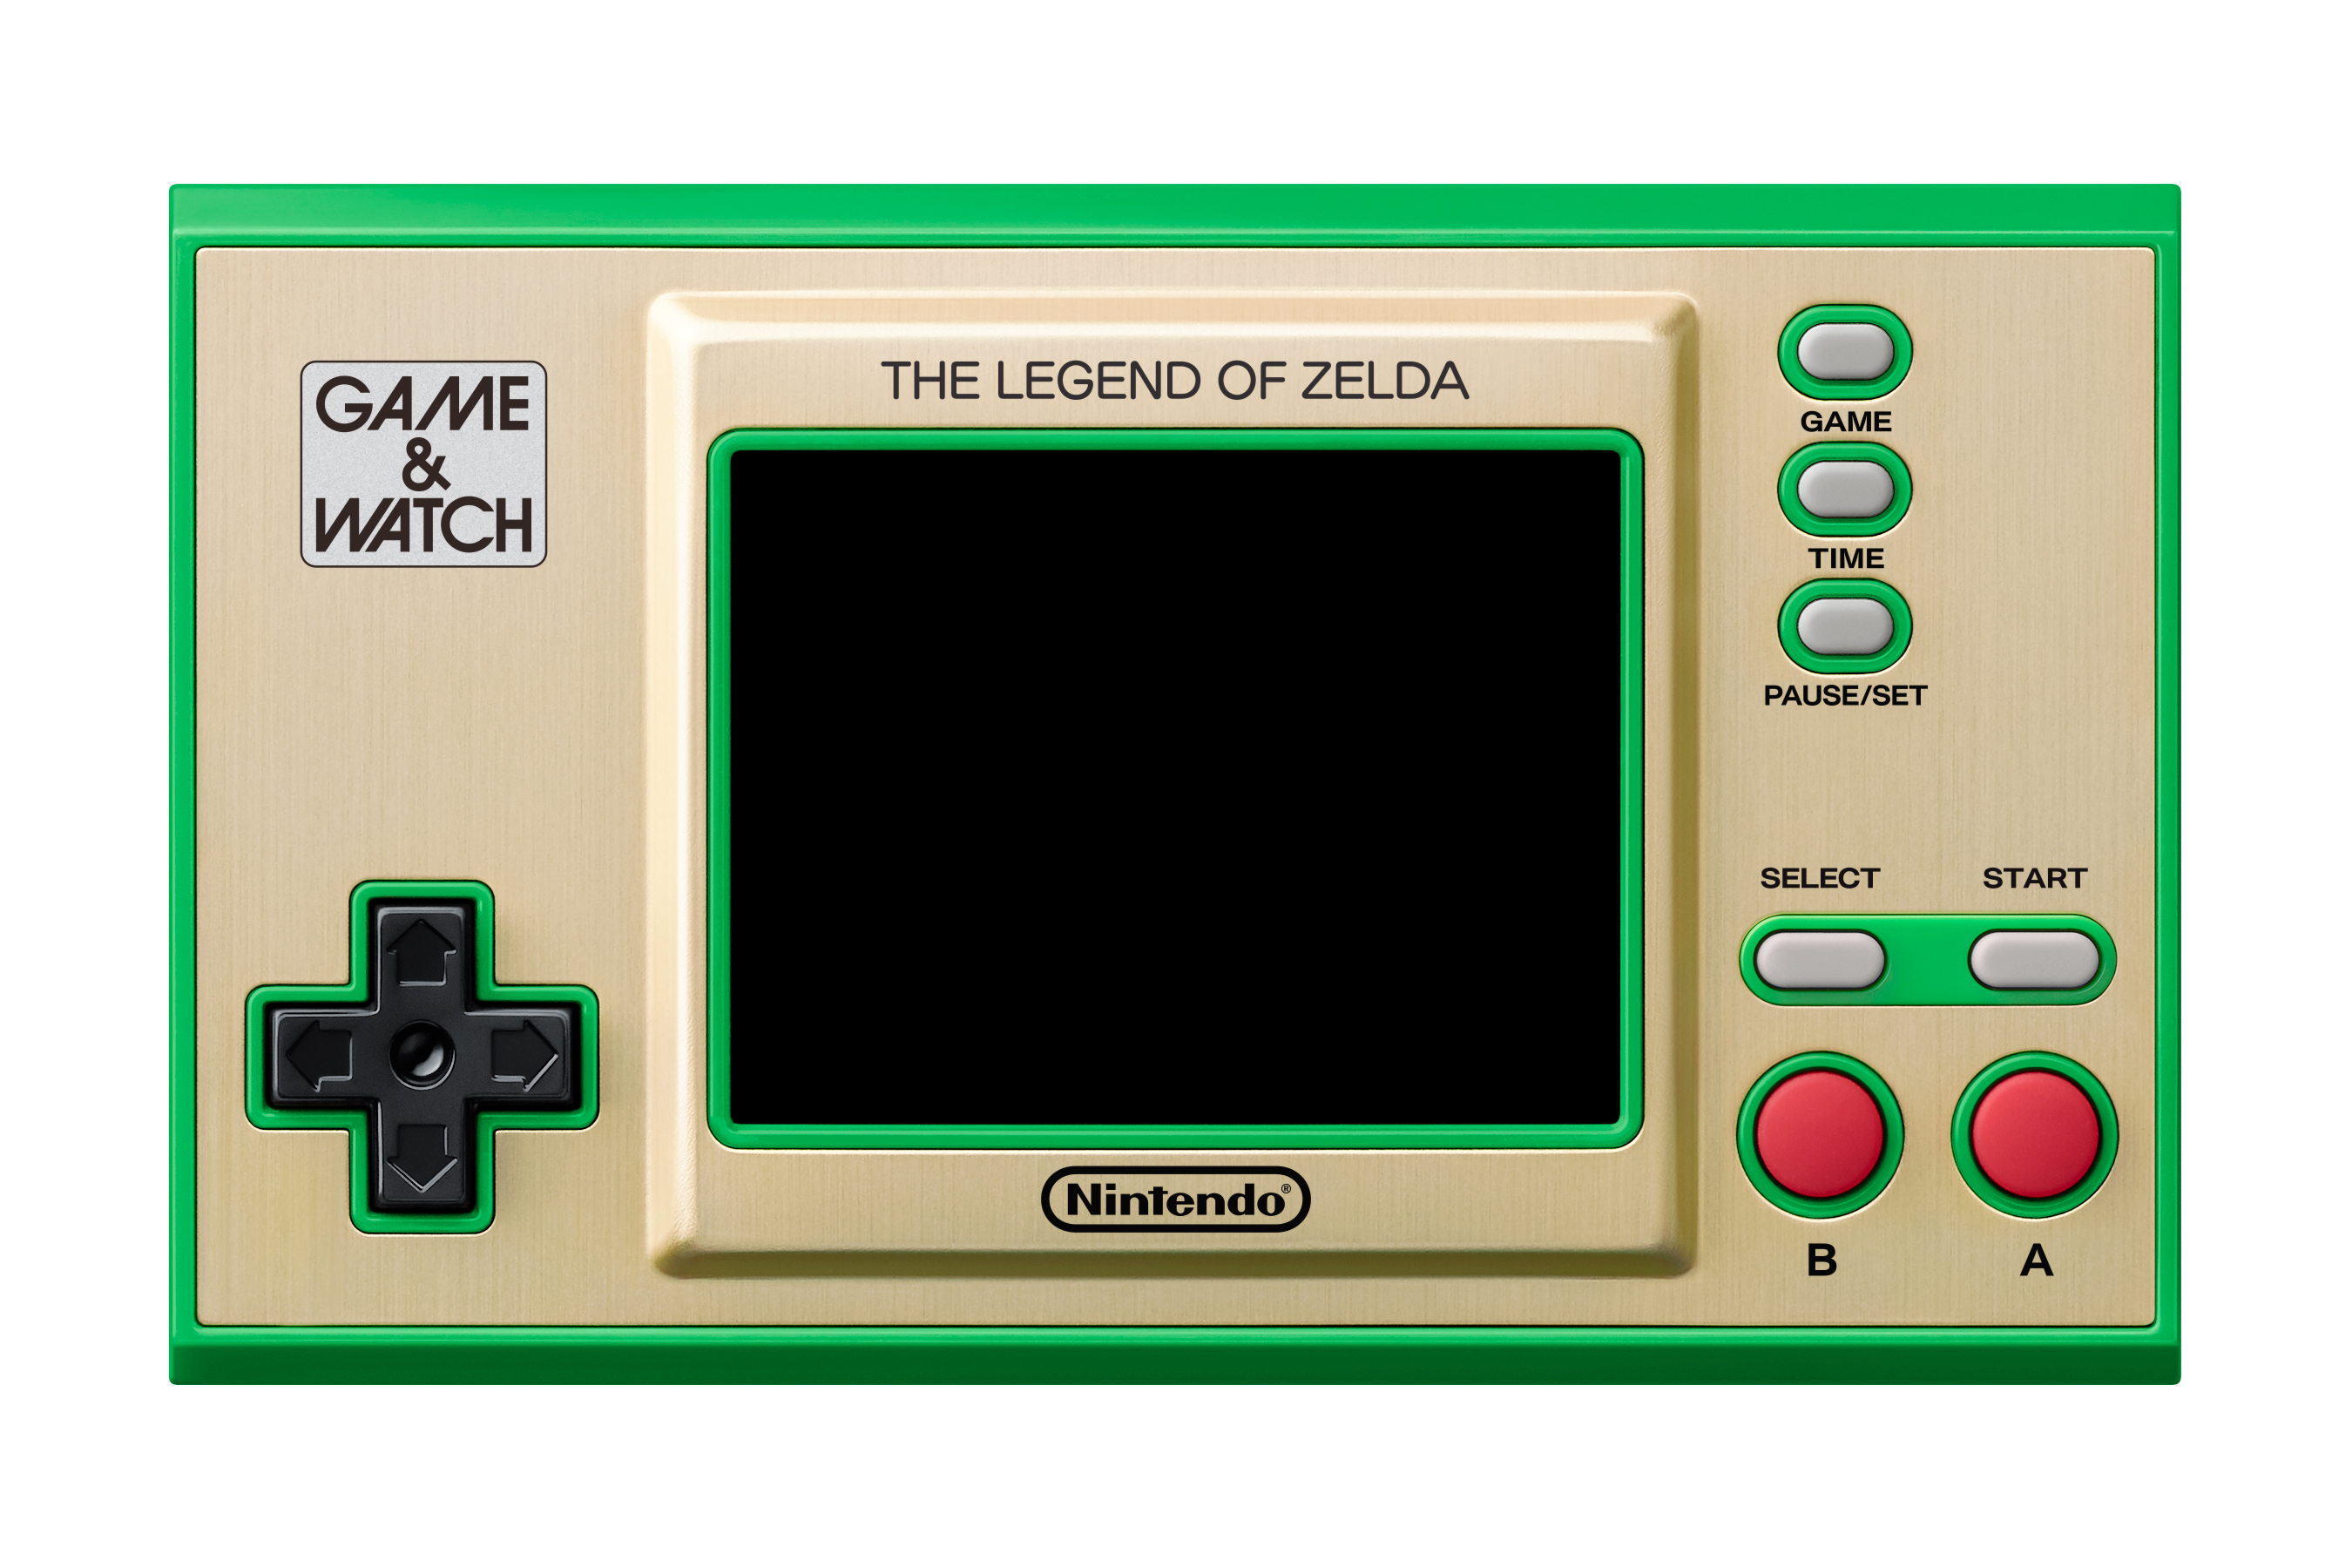 Game & Watch: The Legend of Zelda?, Nintendo NES Classic - image 3 of 18